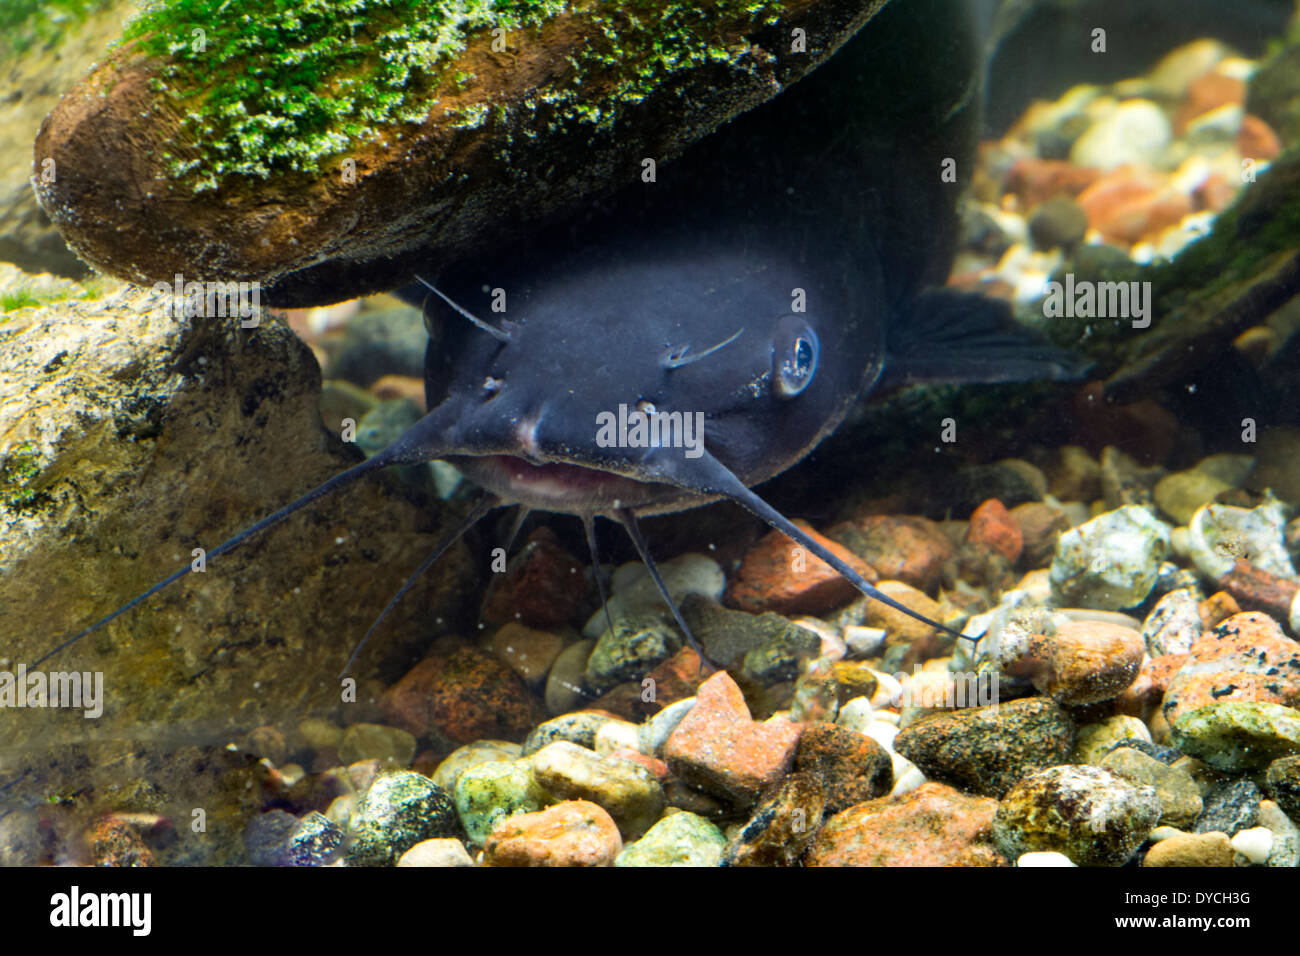 A Catfish. Stock Photo